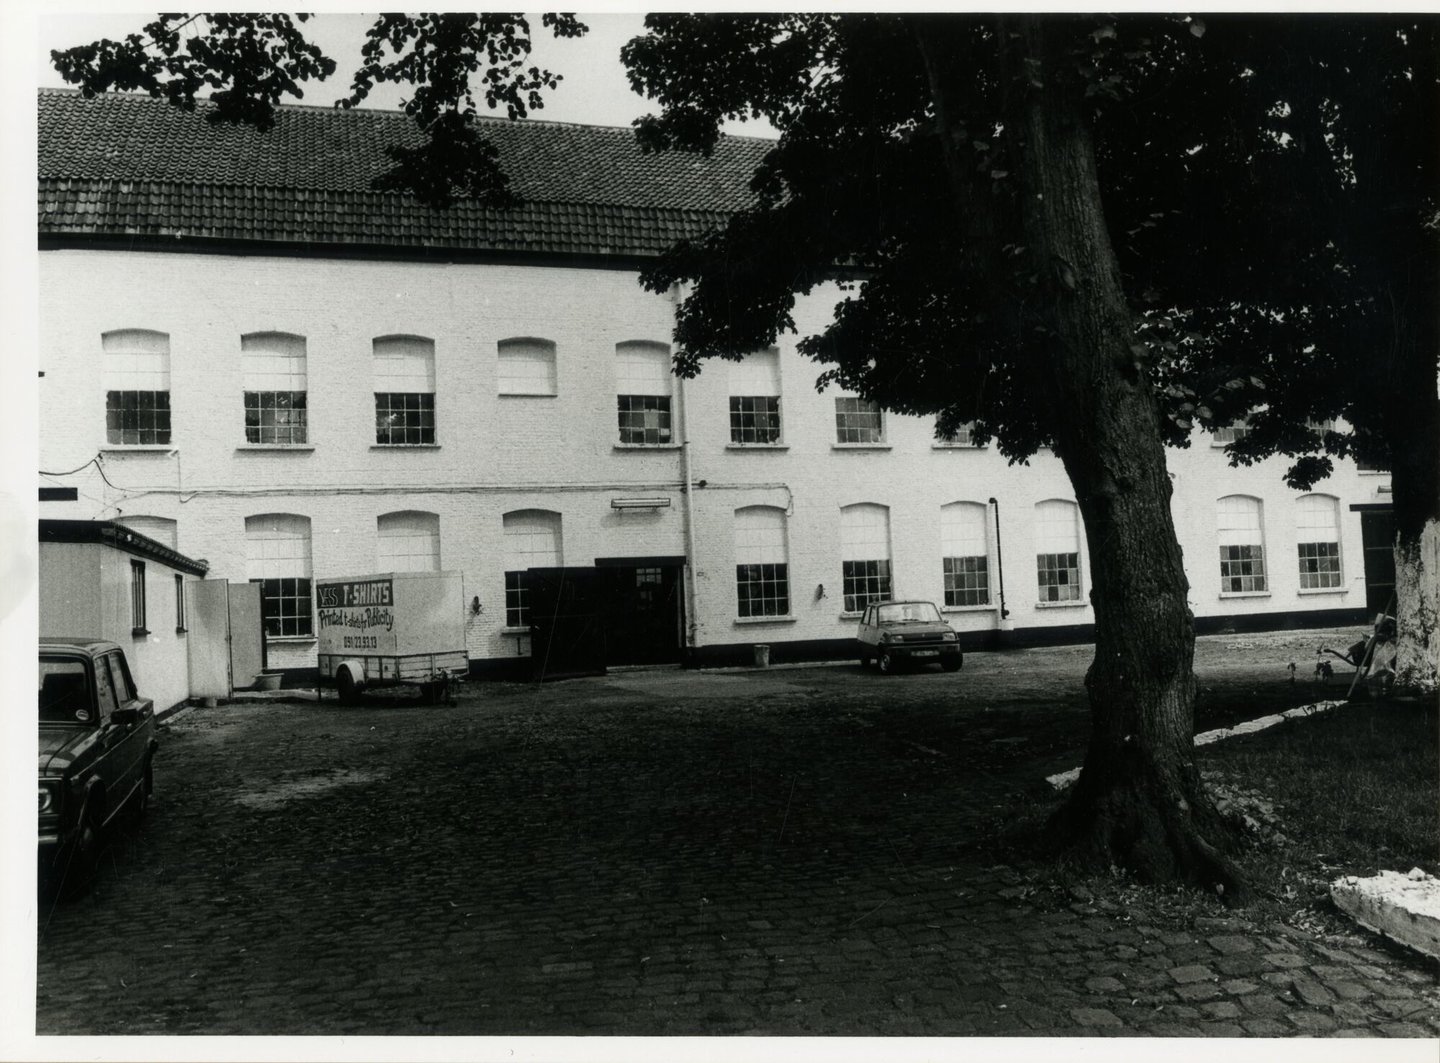 Buitenzicht van voormalige textielfabriek Grenier in Gent